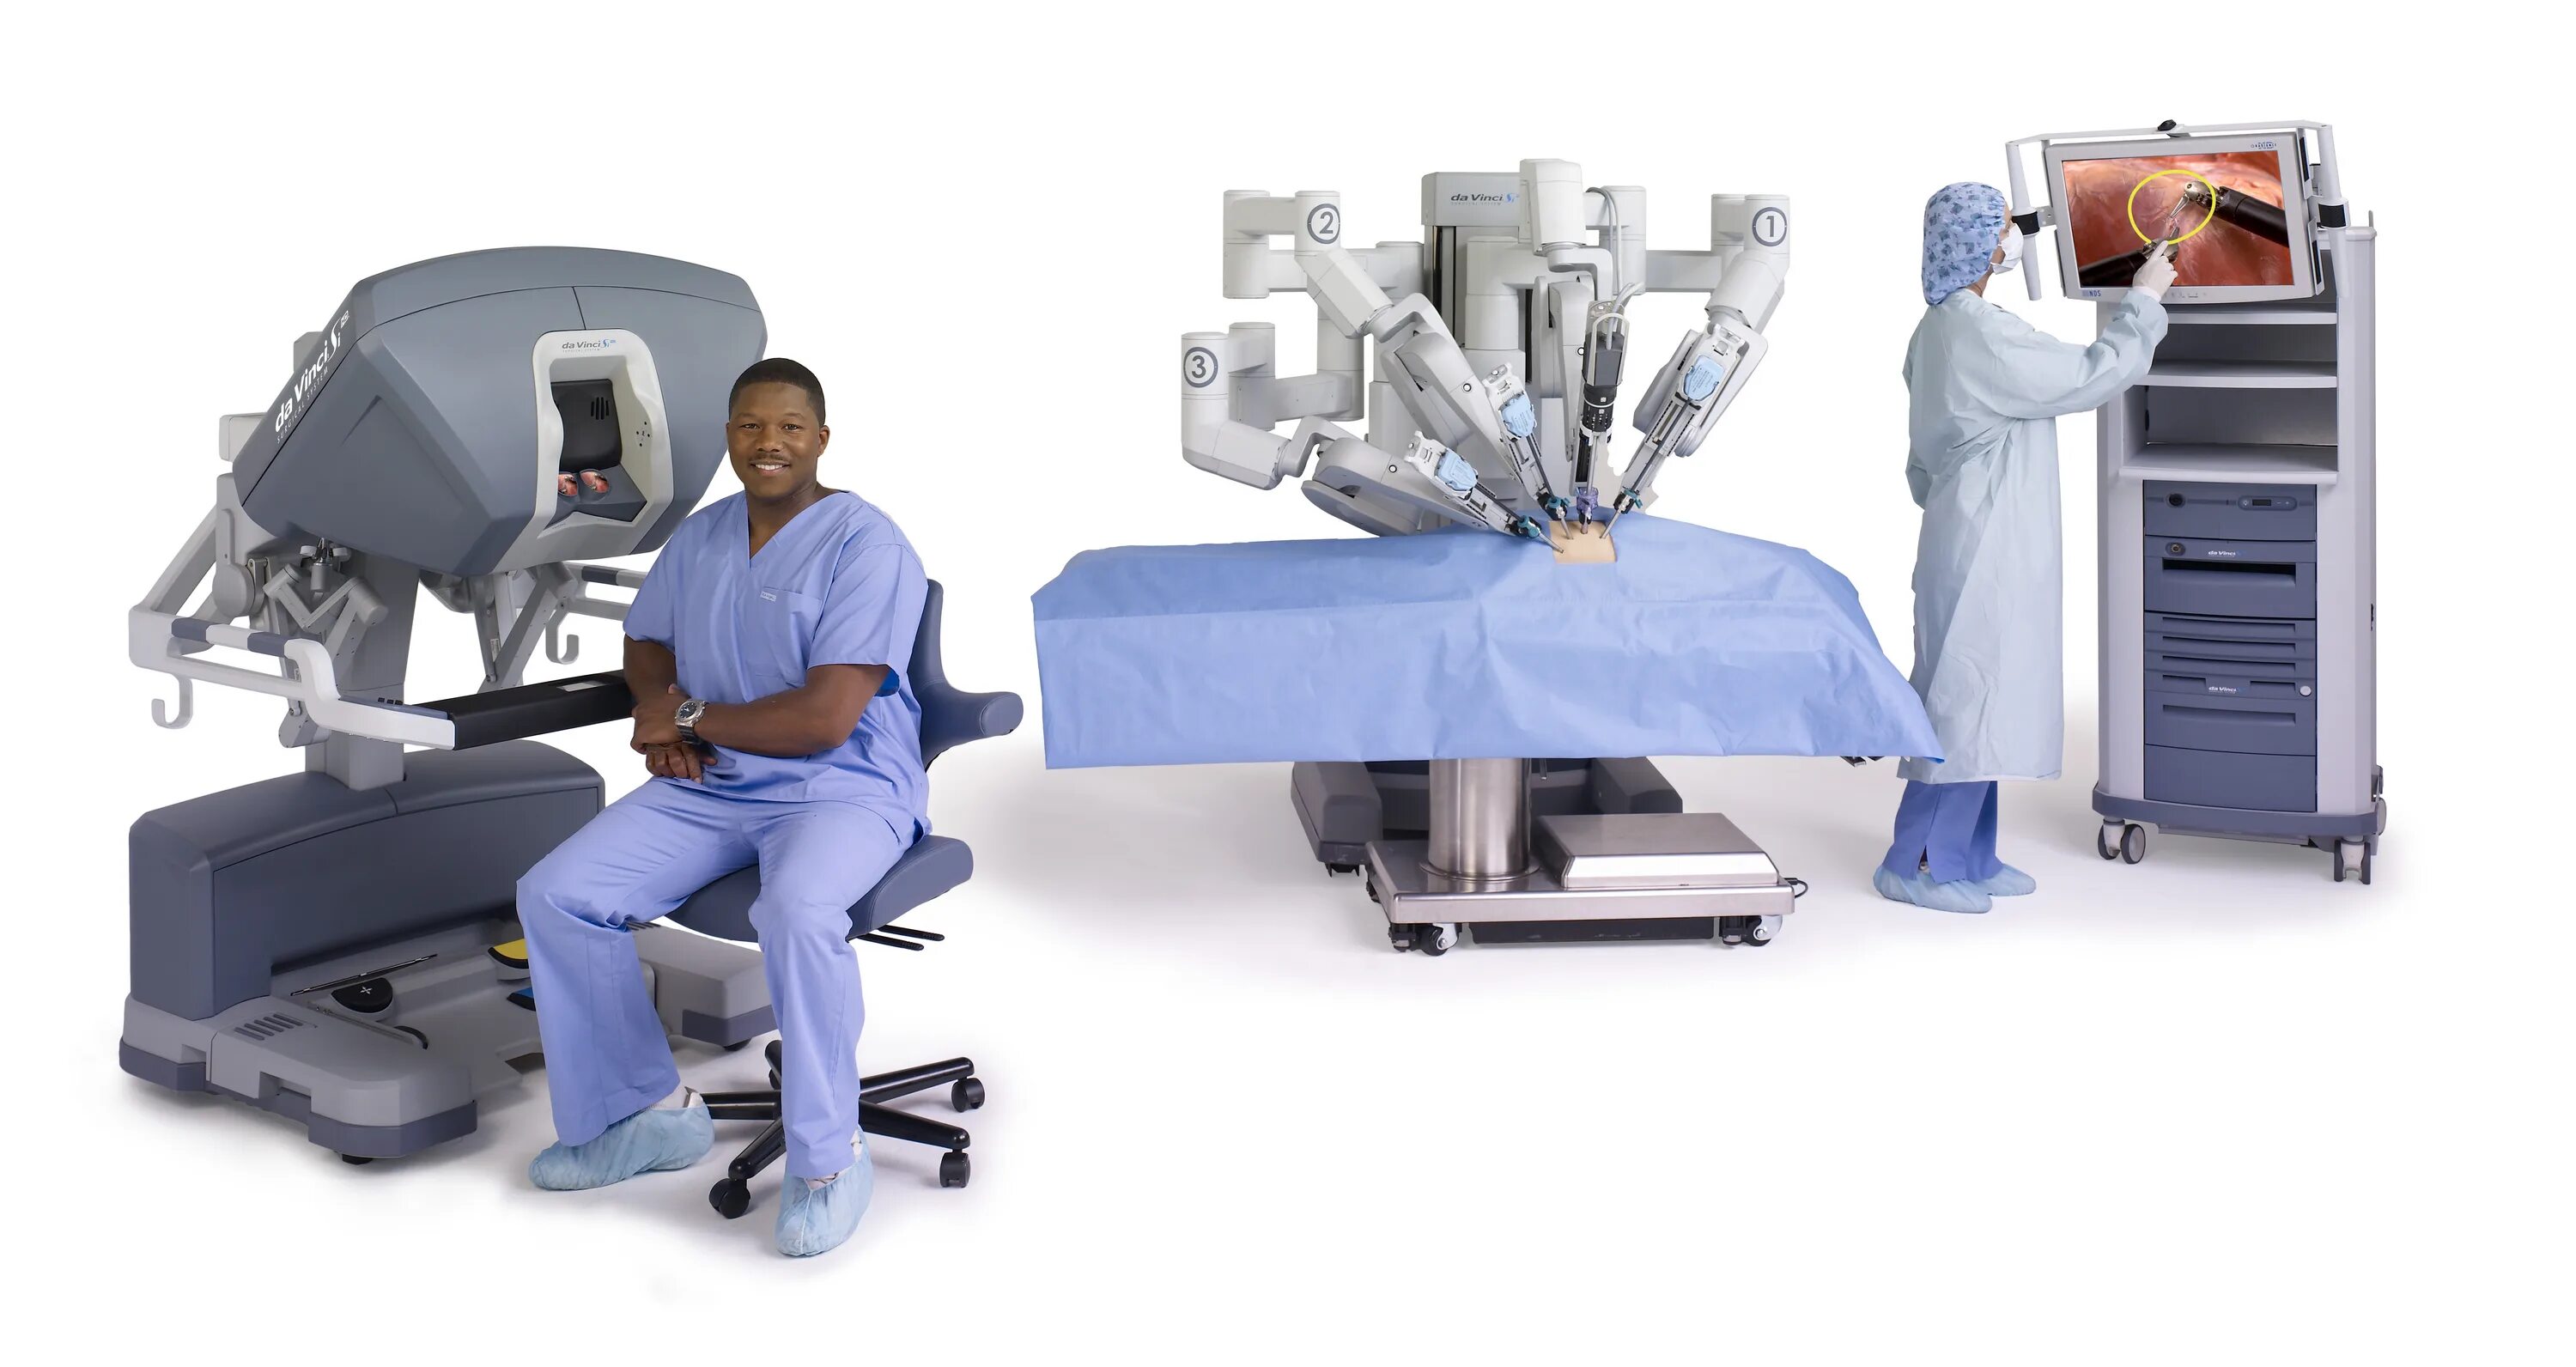 Робот-хирург da Vinci (да Винчи). Робот робот-хирург DAVINCI. Роботизированная хирургическая система da Vinci. Робот DAVINCI операция. Удаление простаты да винчи